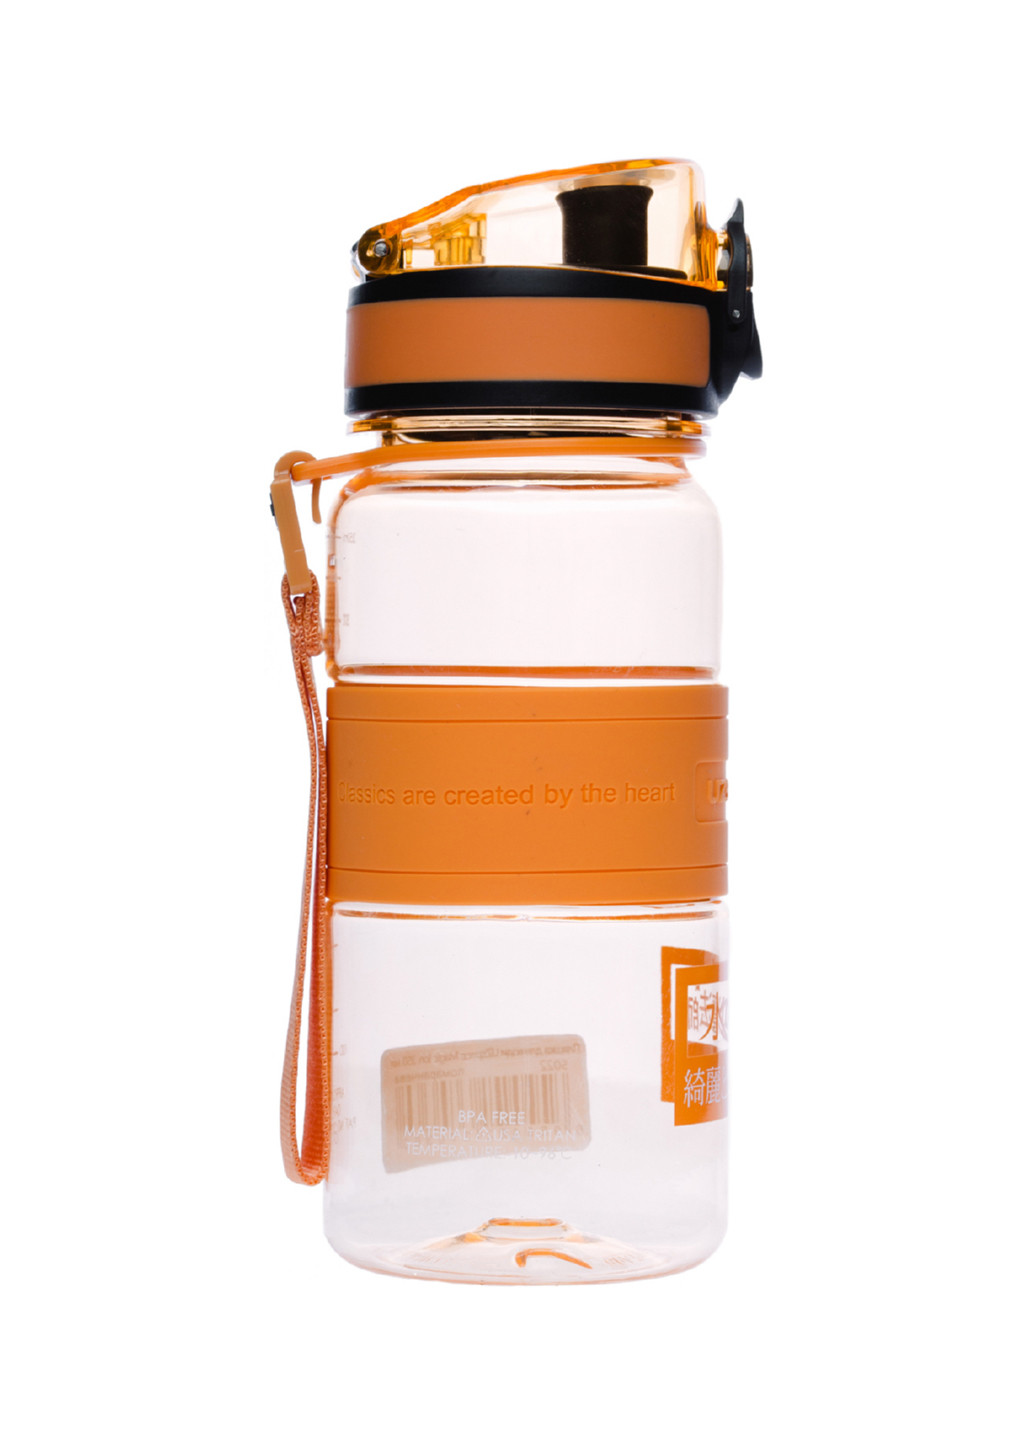 Бутылка для воды Uzspace magic ion 350 мл. оранжевая (143357680)